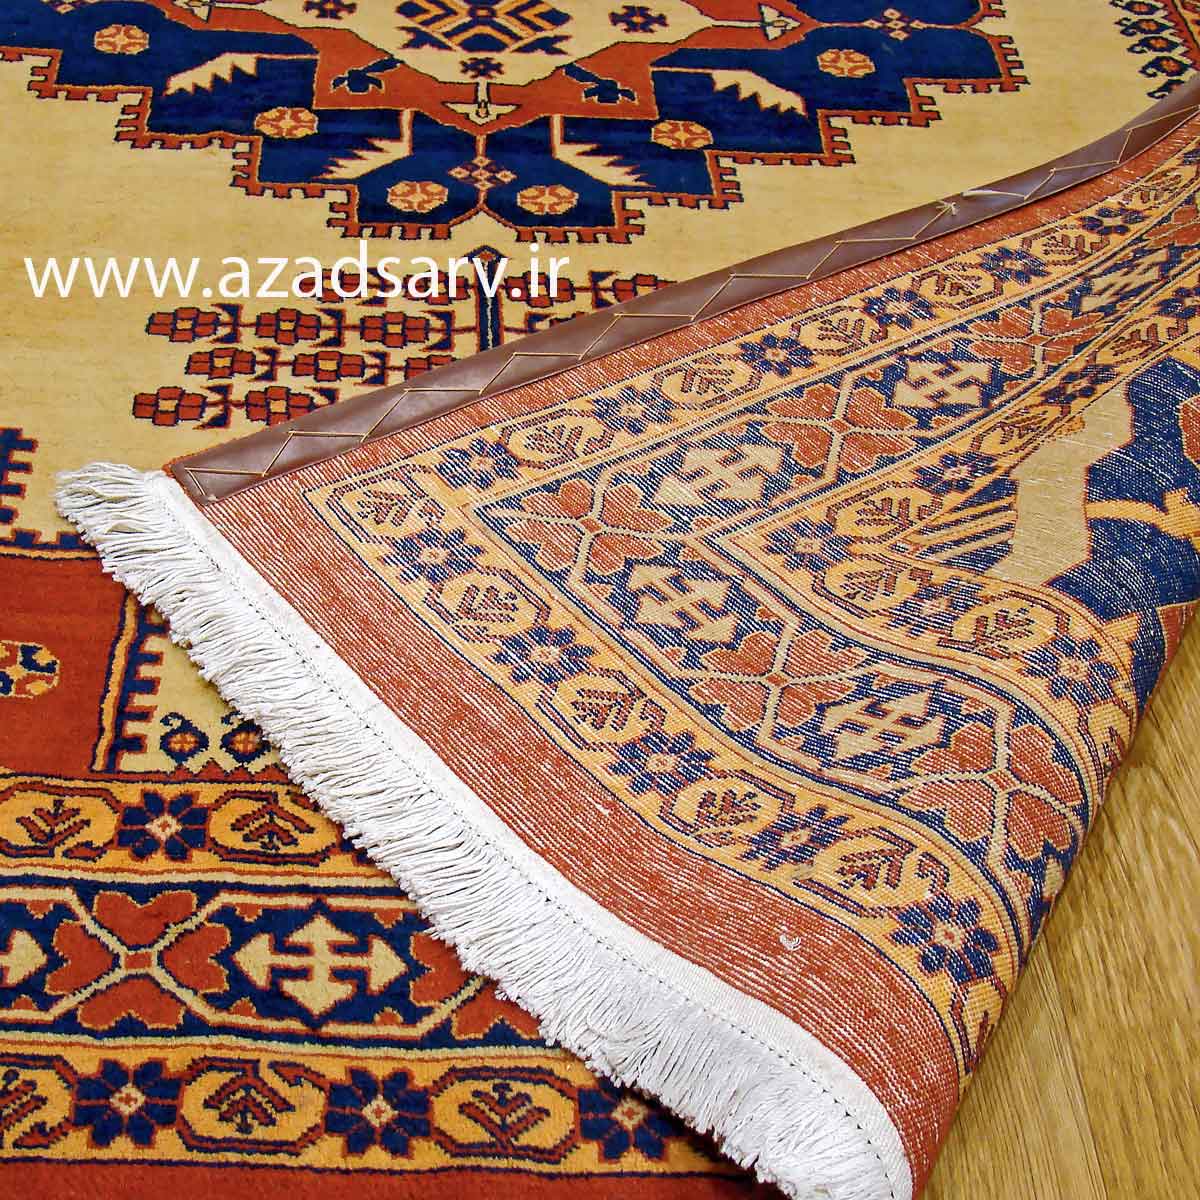 فرش دستباف چهارمتری آزادسرو azadsarv carpet